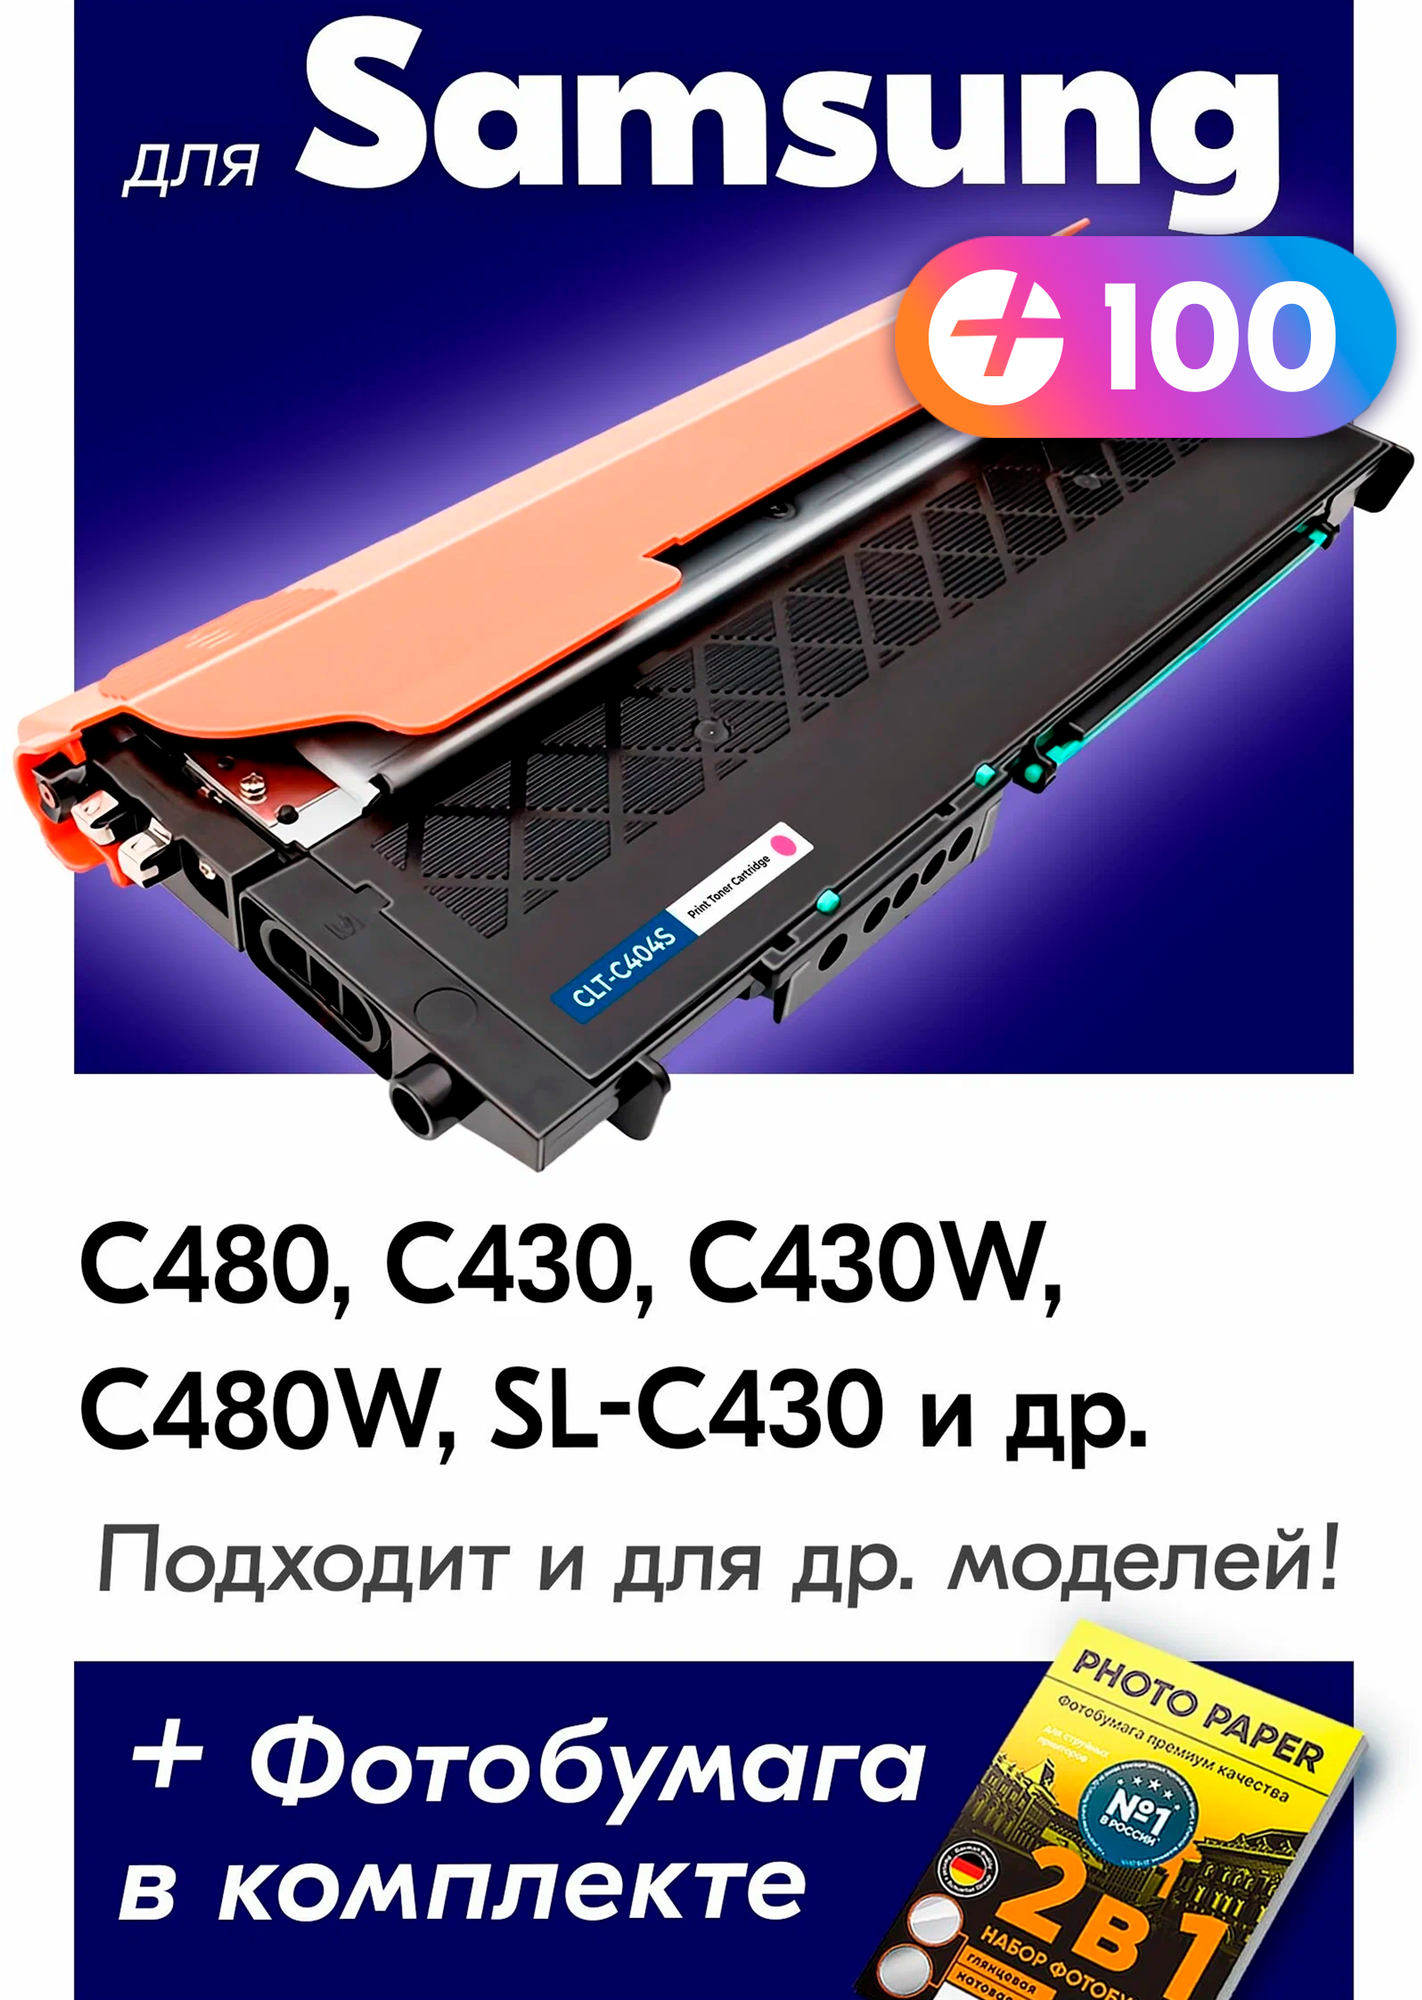 Лазерный картридж для Samsung CLT-K404S, Samsung Xpress C480, C430, C430W, C480W, SL-C430 с краской (тонером) пурпурный новый заправляемый, 1500 копий